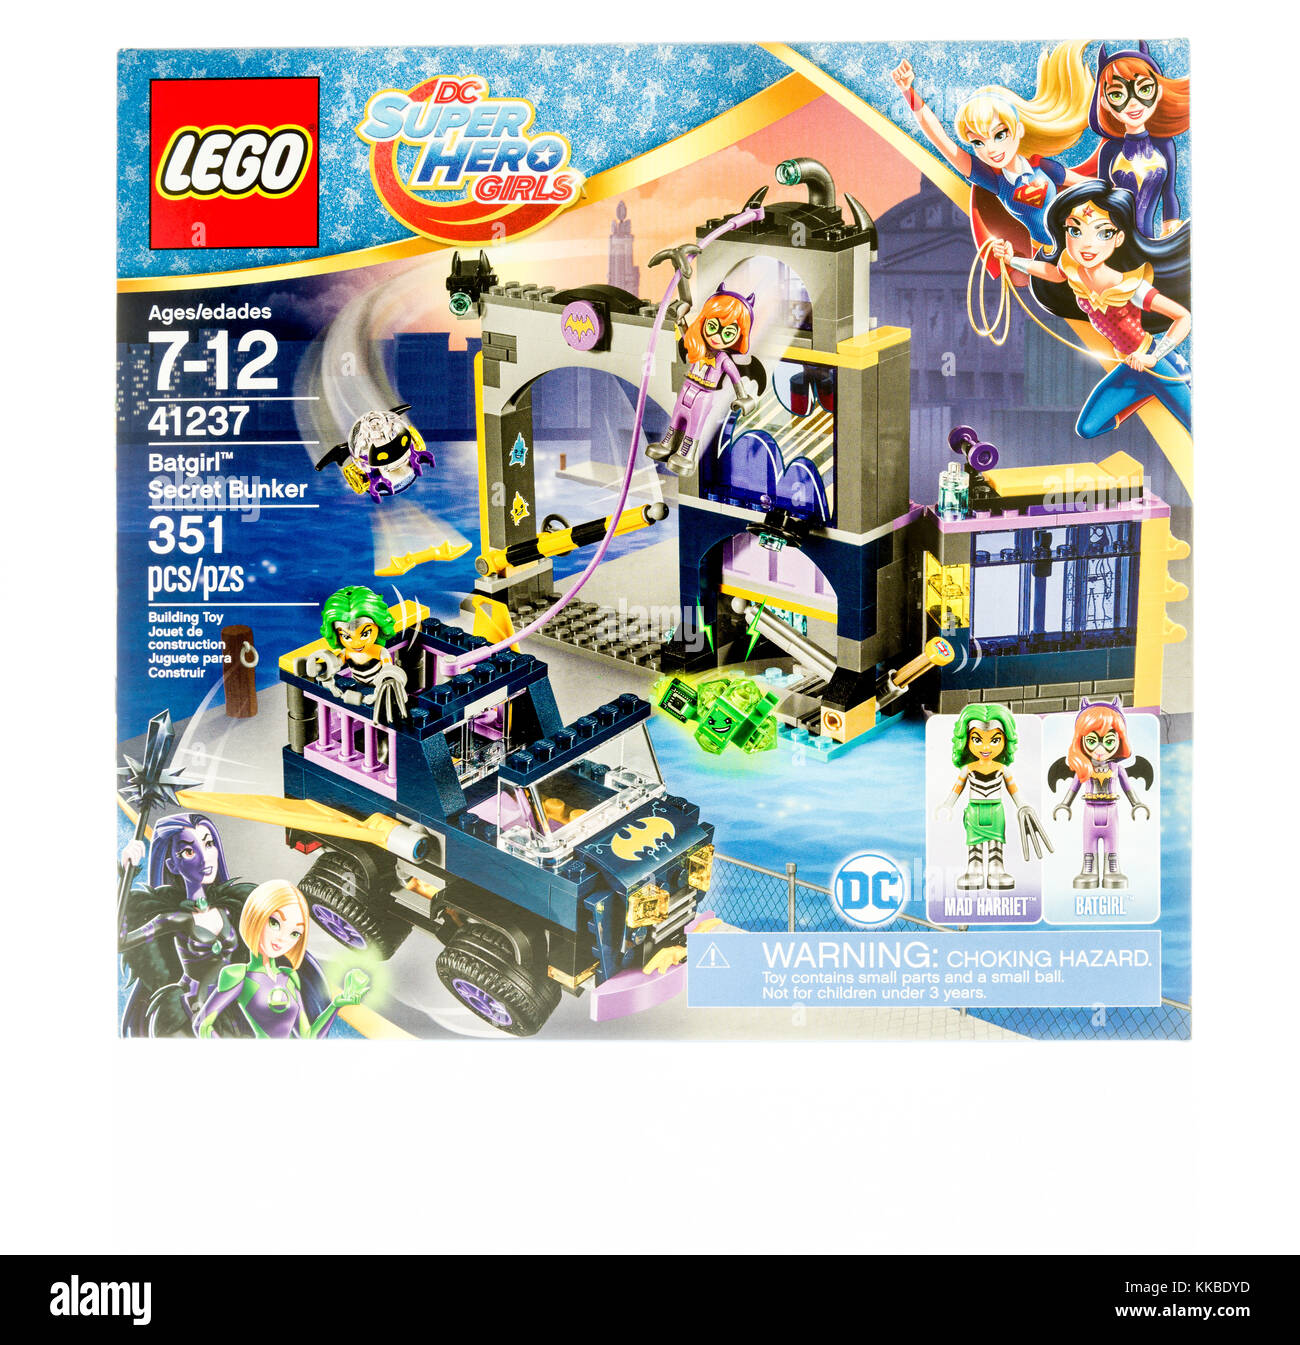 Winneconne, WI - 19. November 2017: Eine Schachtel Lego mit DC Super Hero Girls und Batgirl im Geheimen Bunker auf einem isolierten Hintergrund. Stockfoto